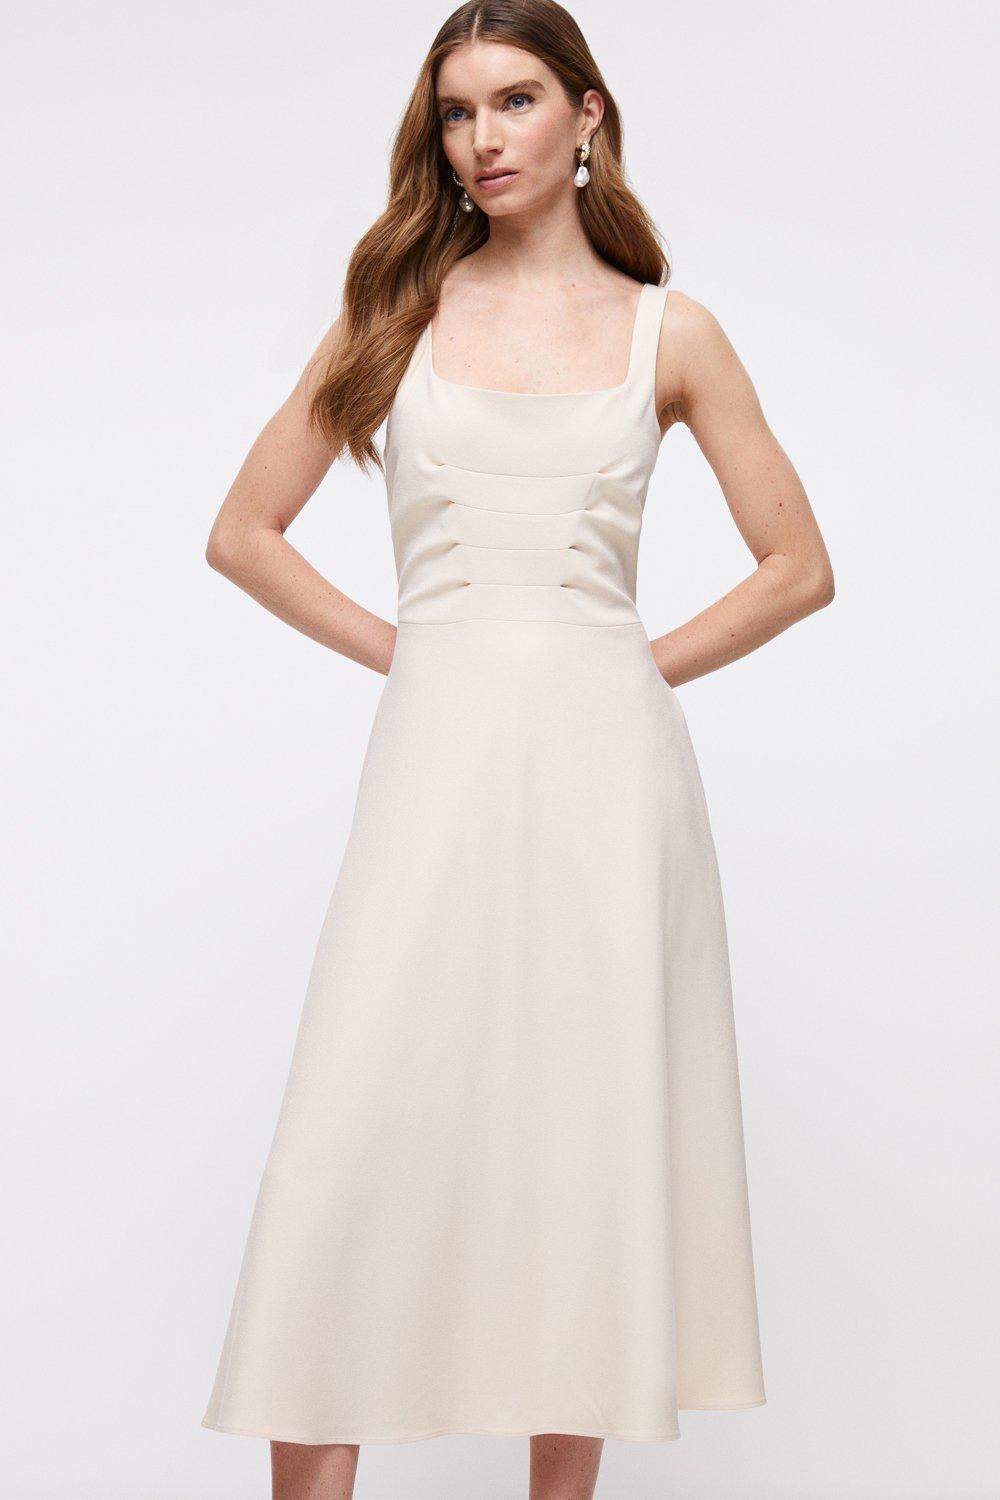 Premium Pleat Bodice Midi Dress With Full Skirt - Cream